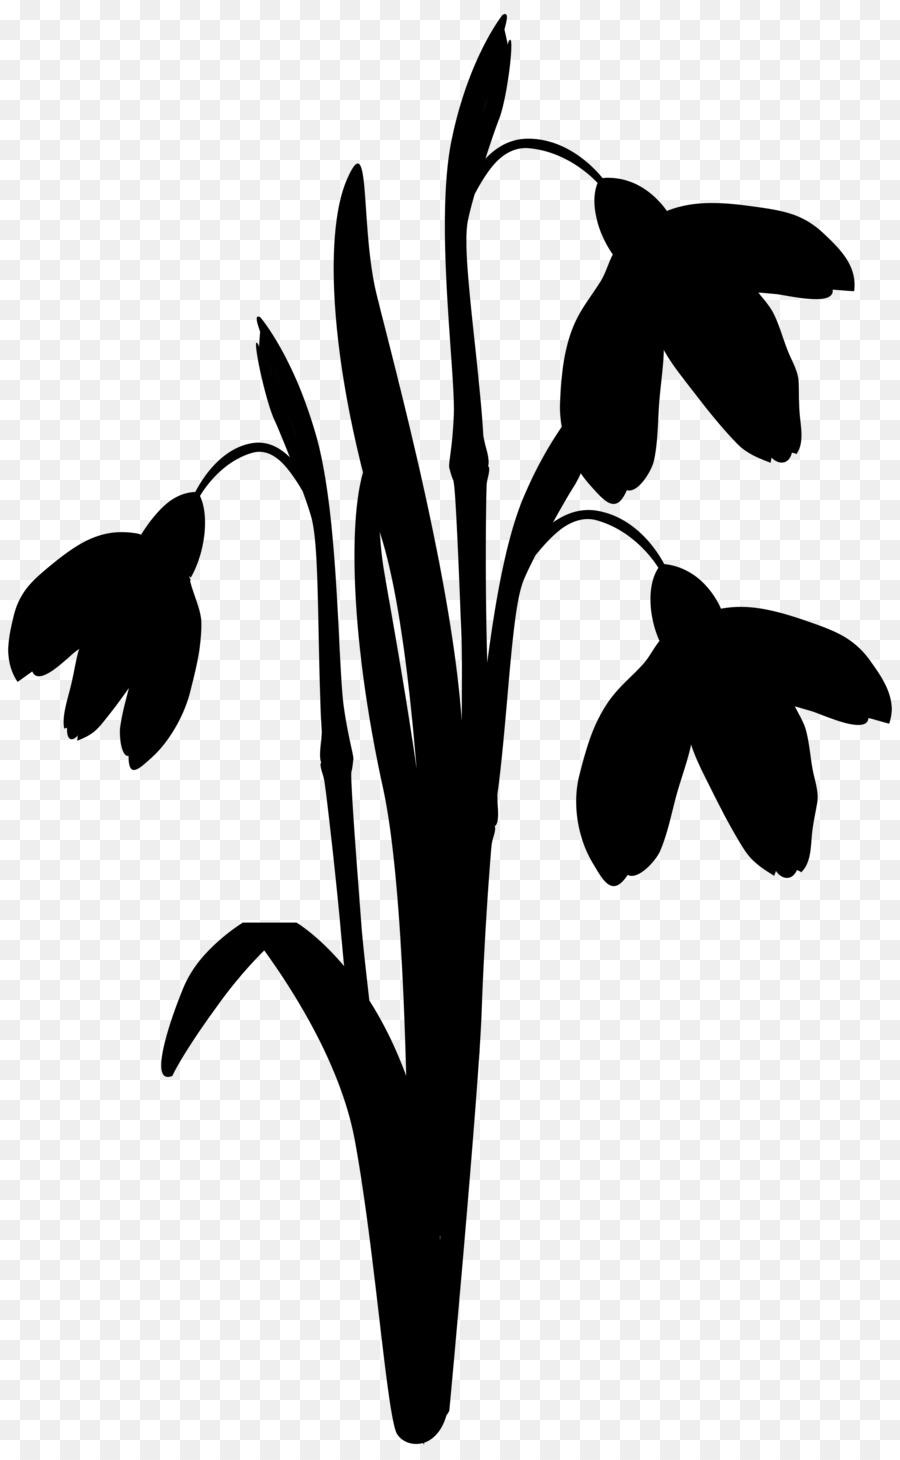 Clip art Leaf Silhouette Line Plant stem -  png download - 4965*8000 - Free Transparent Leaf png Download.